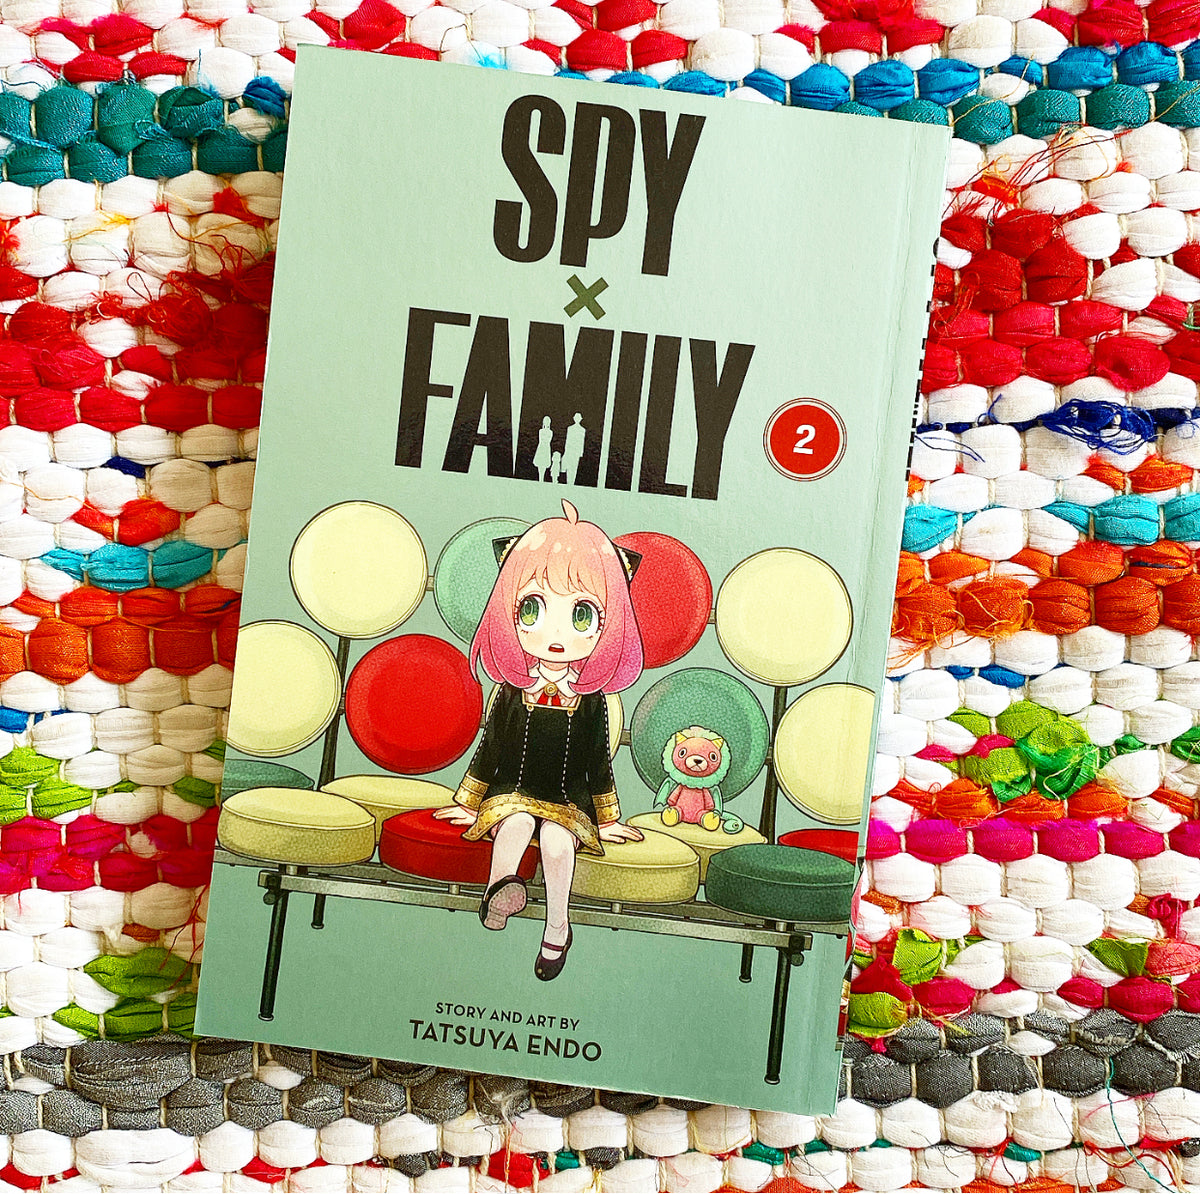 SPY×FAMILY 2 (SPY×FAMILY, #2) by Tatsuya Endo